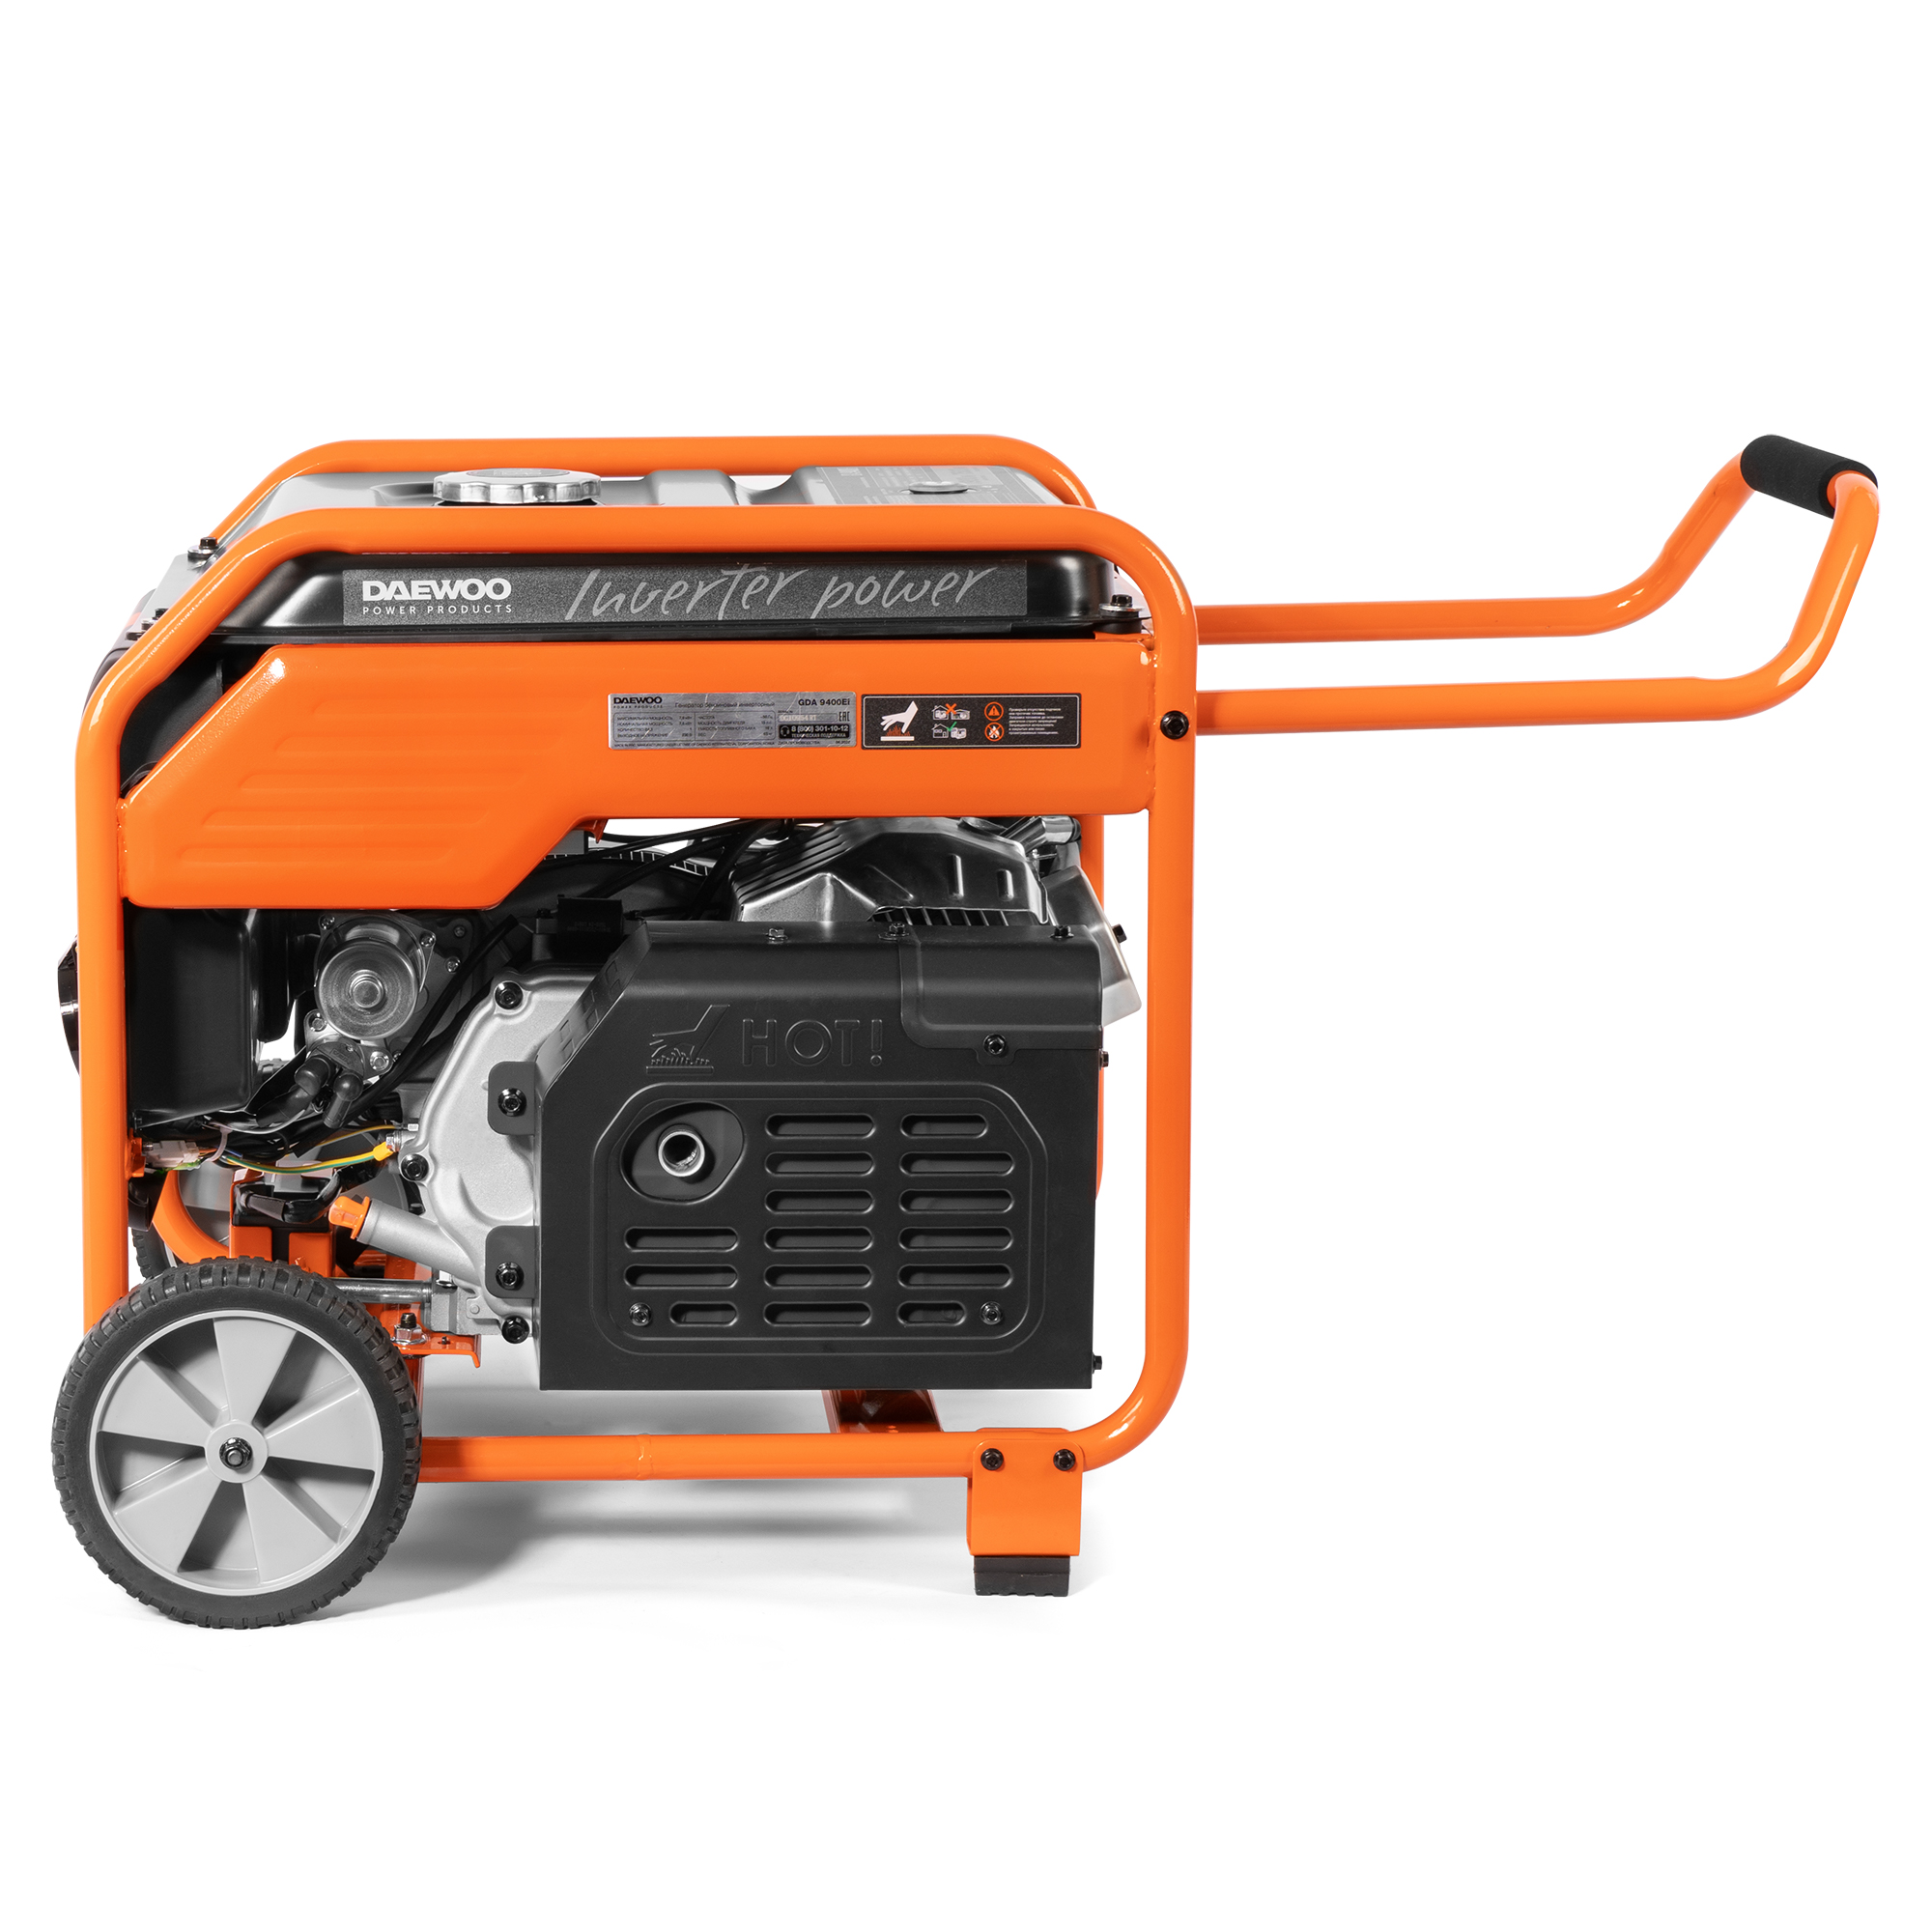 Генератор бензиновый DAEWOO инверторный (GDA 9400EI), цвет оранжевый series 420 - фото 3